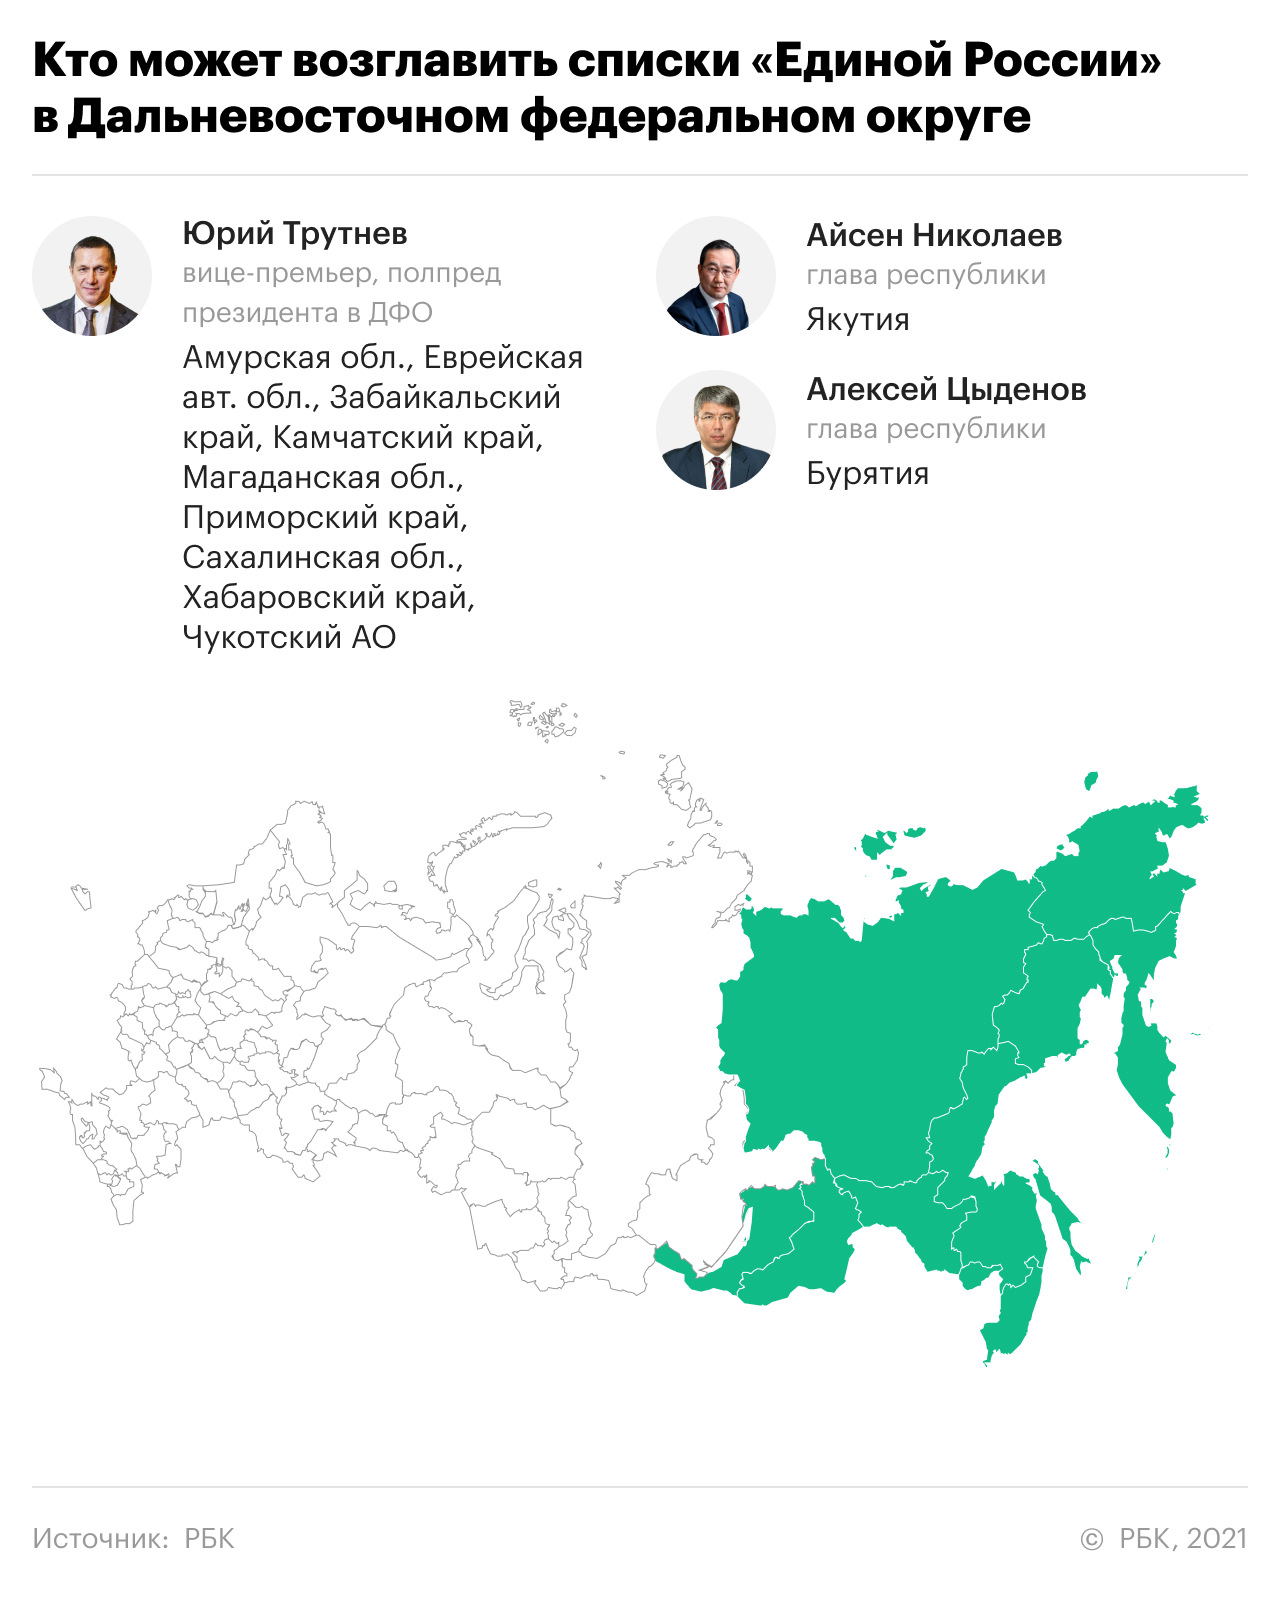 Кто поведет «Единую Россию» на выборы. Главное